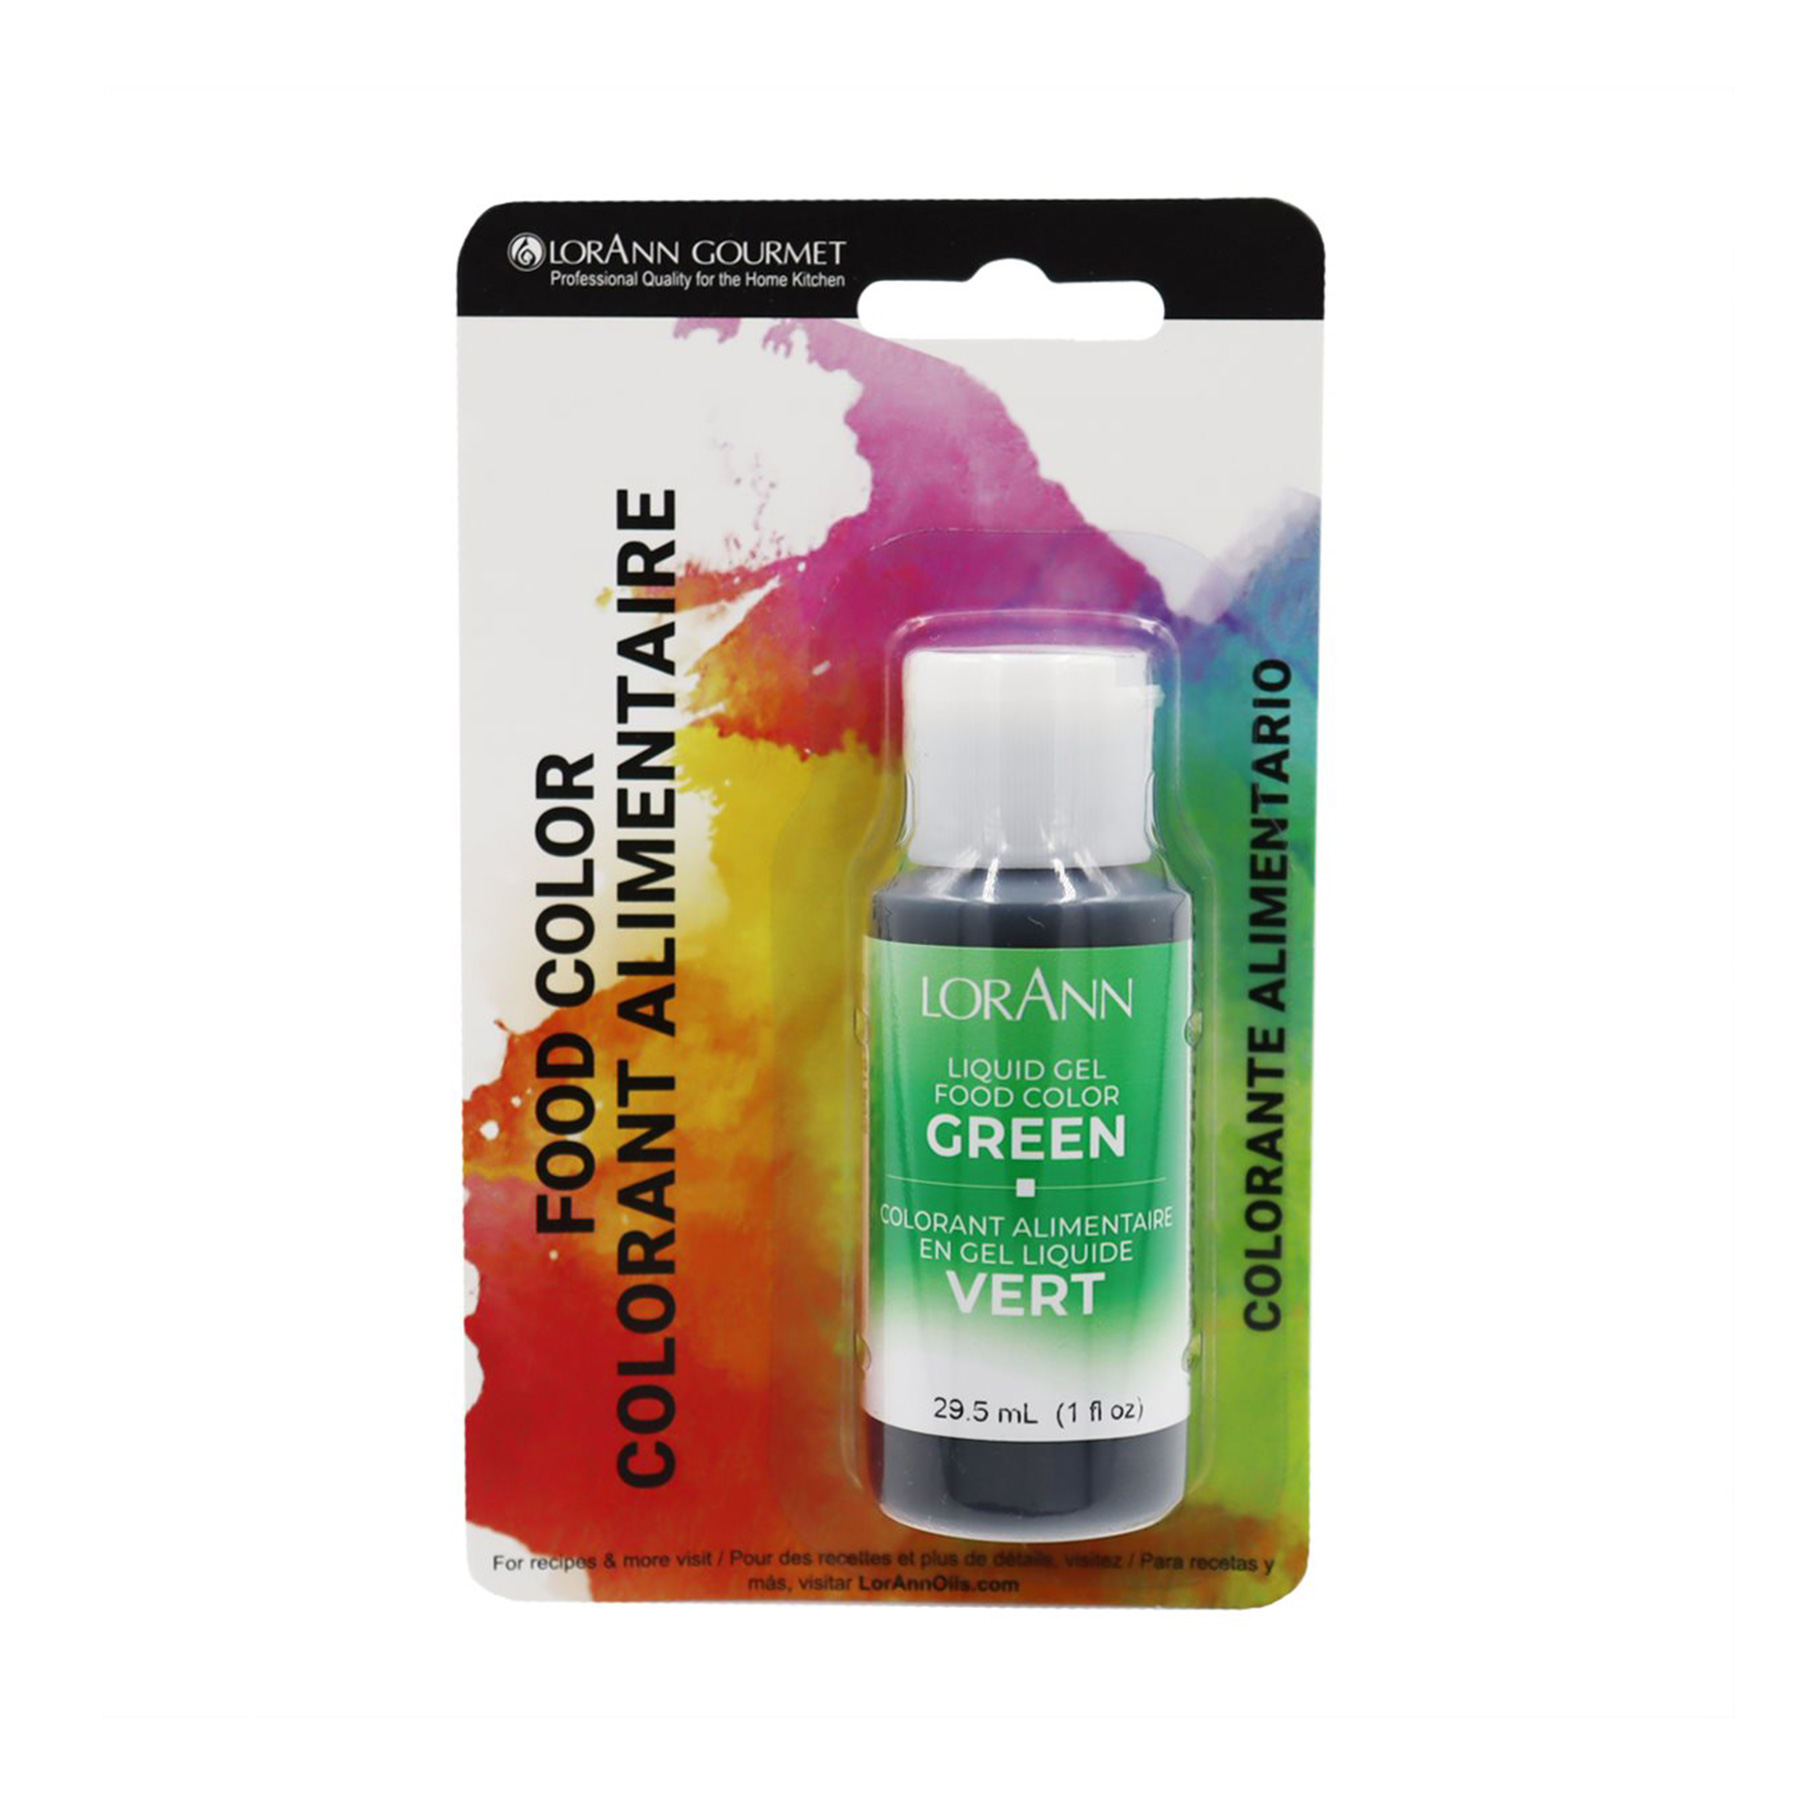 lorann-green-liquid-gel-food-colouring-29-5ml-package